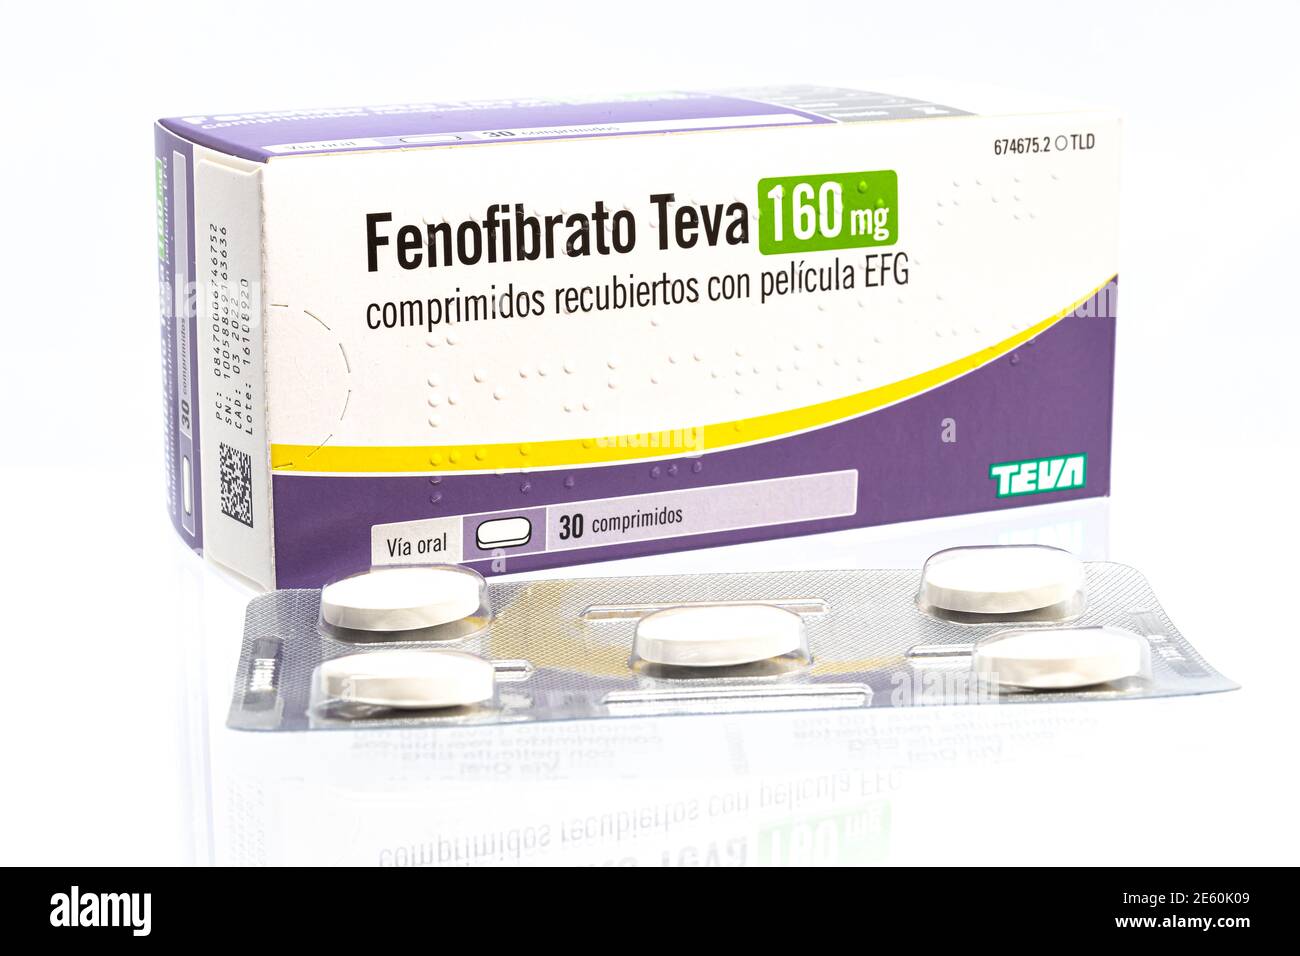 Huelva, Spanien - 25. Januar 2021: Spanish Box von Fenofibrate Marke Teva, ist ein Medikament der Fibrate Klasse verwendet, um abnorme Blutfettwerte zu behandeln Stockfoto